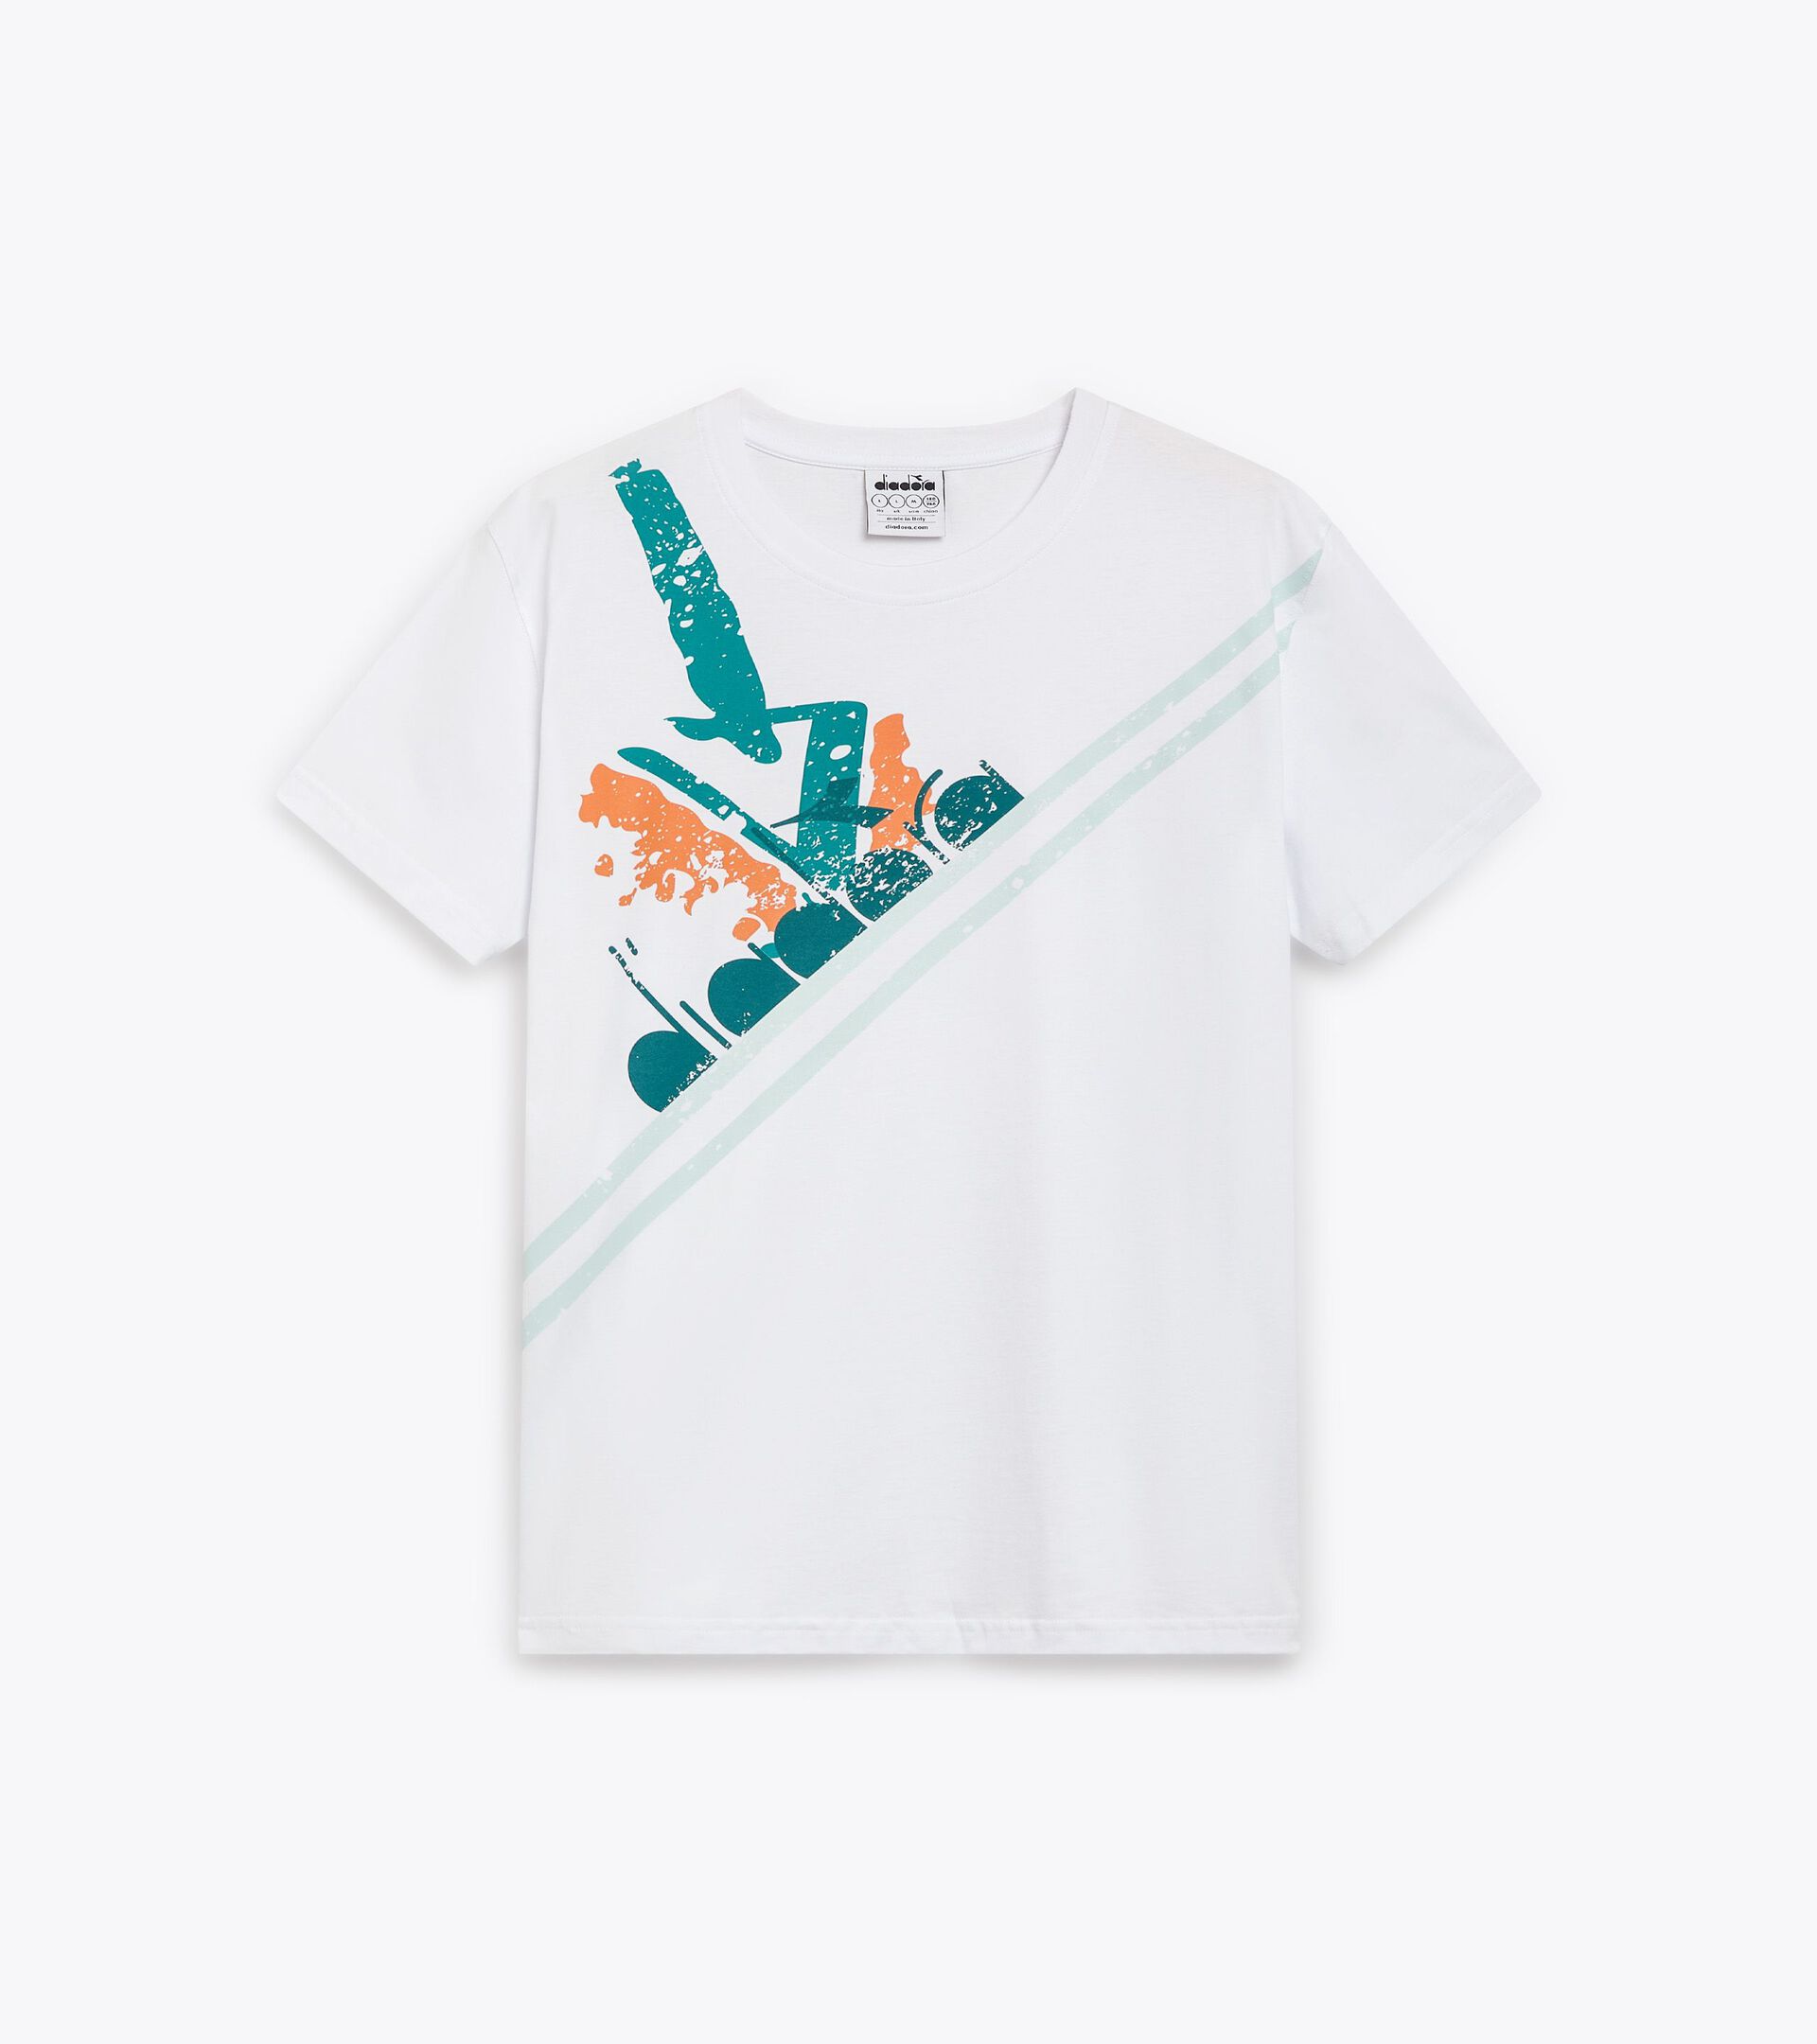 T-shirt de sport style années 90 - Made in Italy - Homme T-SHIRT SS TENNIS 90 PORT BLEU - Diadora